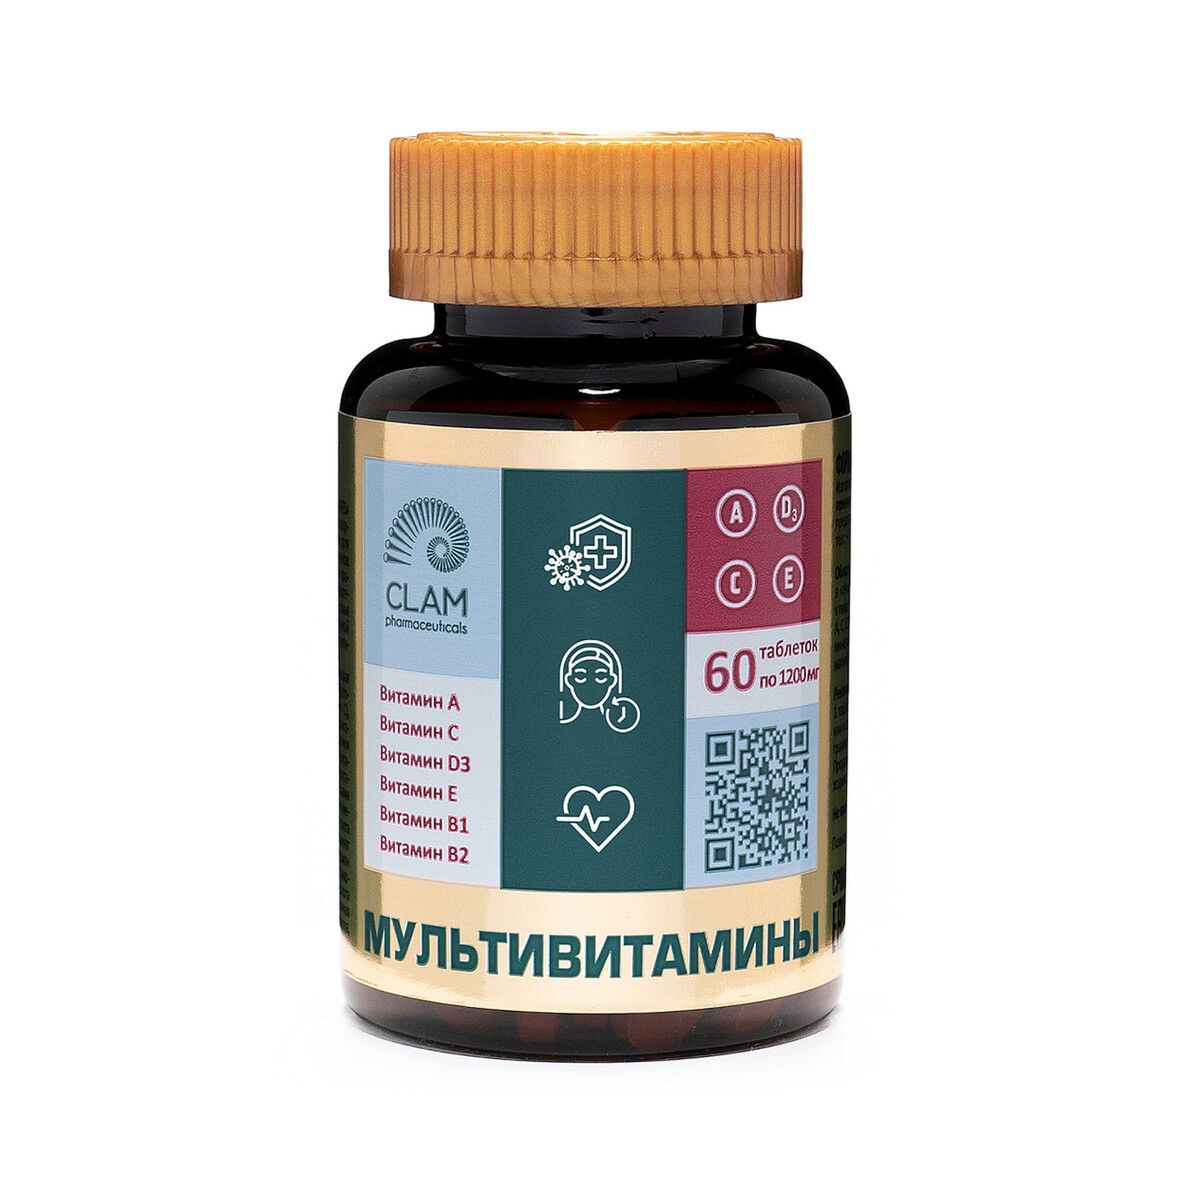 Мультивитамины - anti age, источник витаминов и минералов - комплекс для иммунитета, молодости и красоты - 60 капсул инозитол и фолиевая кислота бад для здоровья и красоты 60 капсул